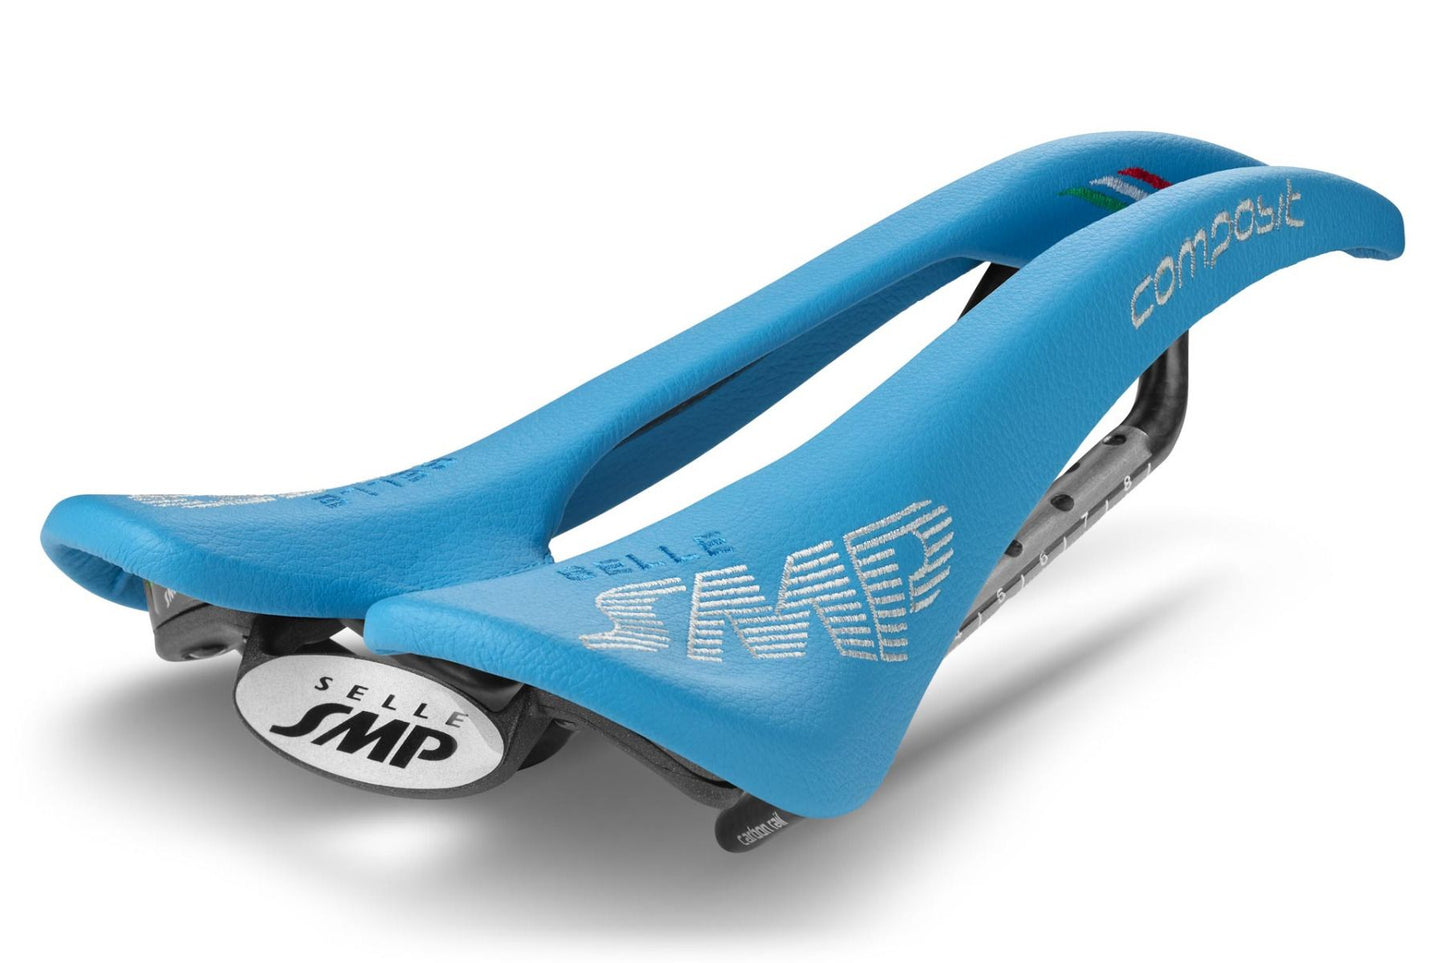 Selle SMP Composit Saddle with Carbon Rails (Light Blue)